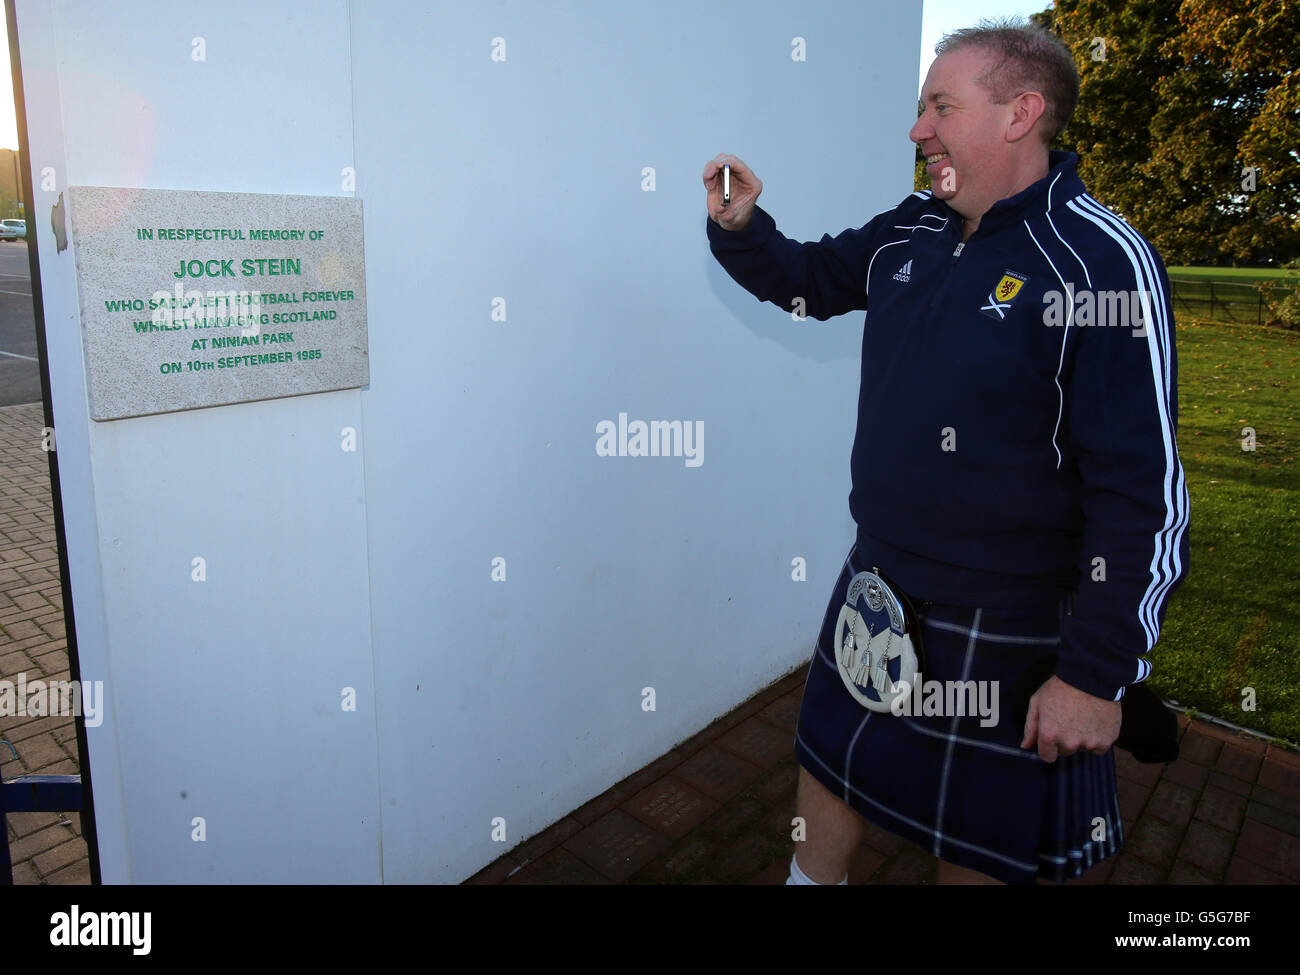 Schottland-Fan Gary Holden an den alten Ninian Park Gates mit der Gedenktafel an den ehemaligen Schottland-Manager Jock Stein vor dem FIFA-WM-Qualifikationsspiel 2014 im Cardiff City Stadium, Cardiff. Stockfoto